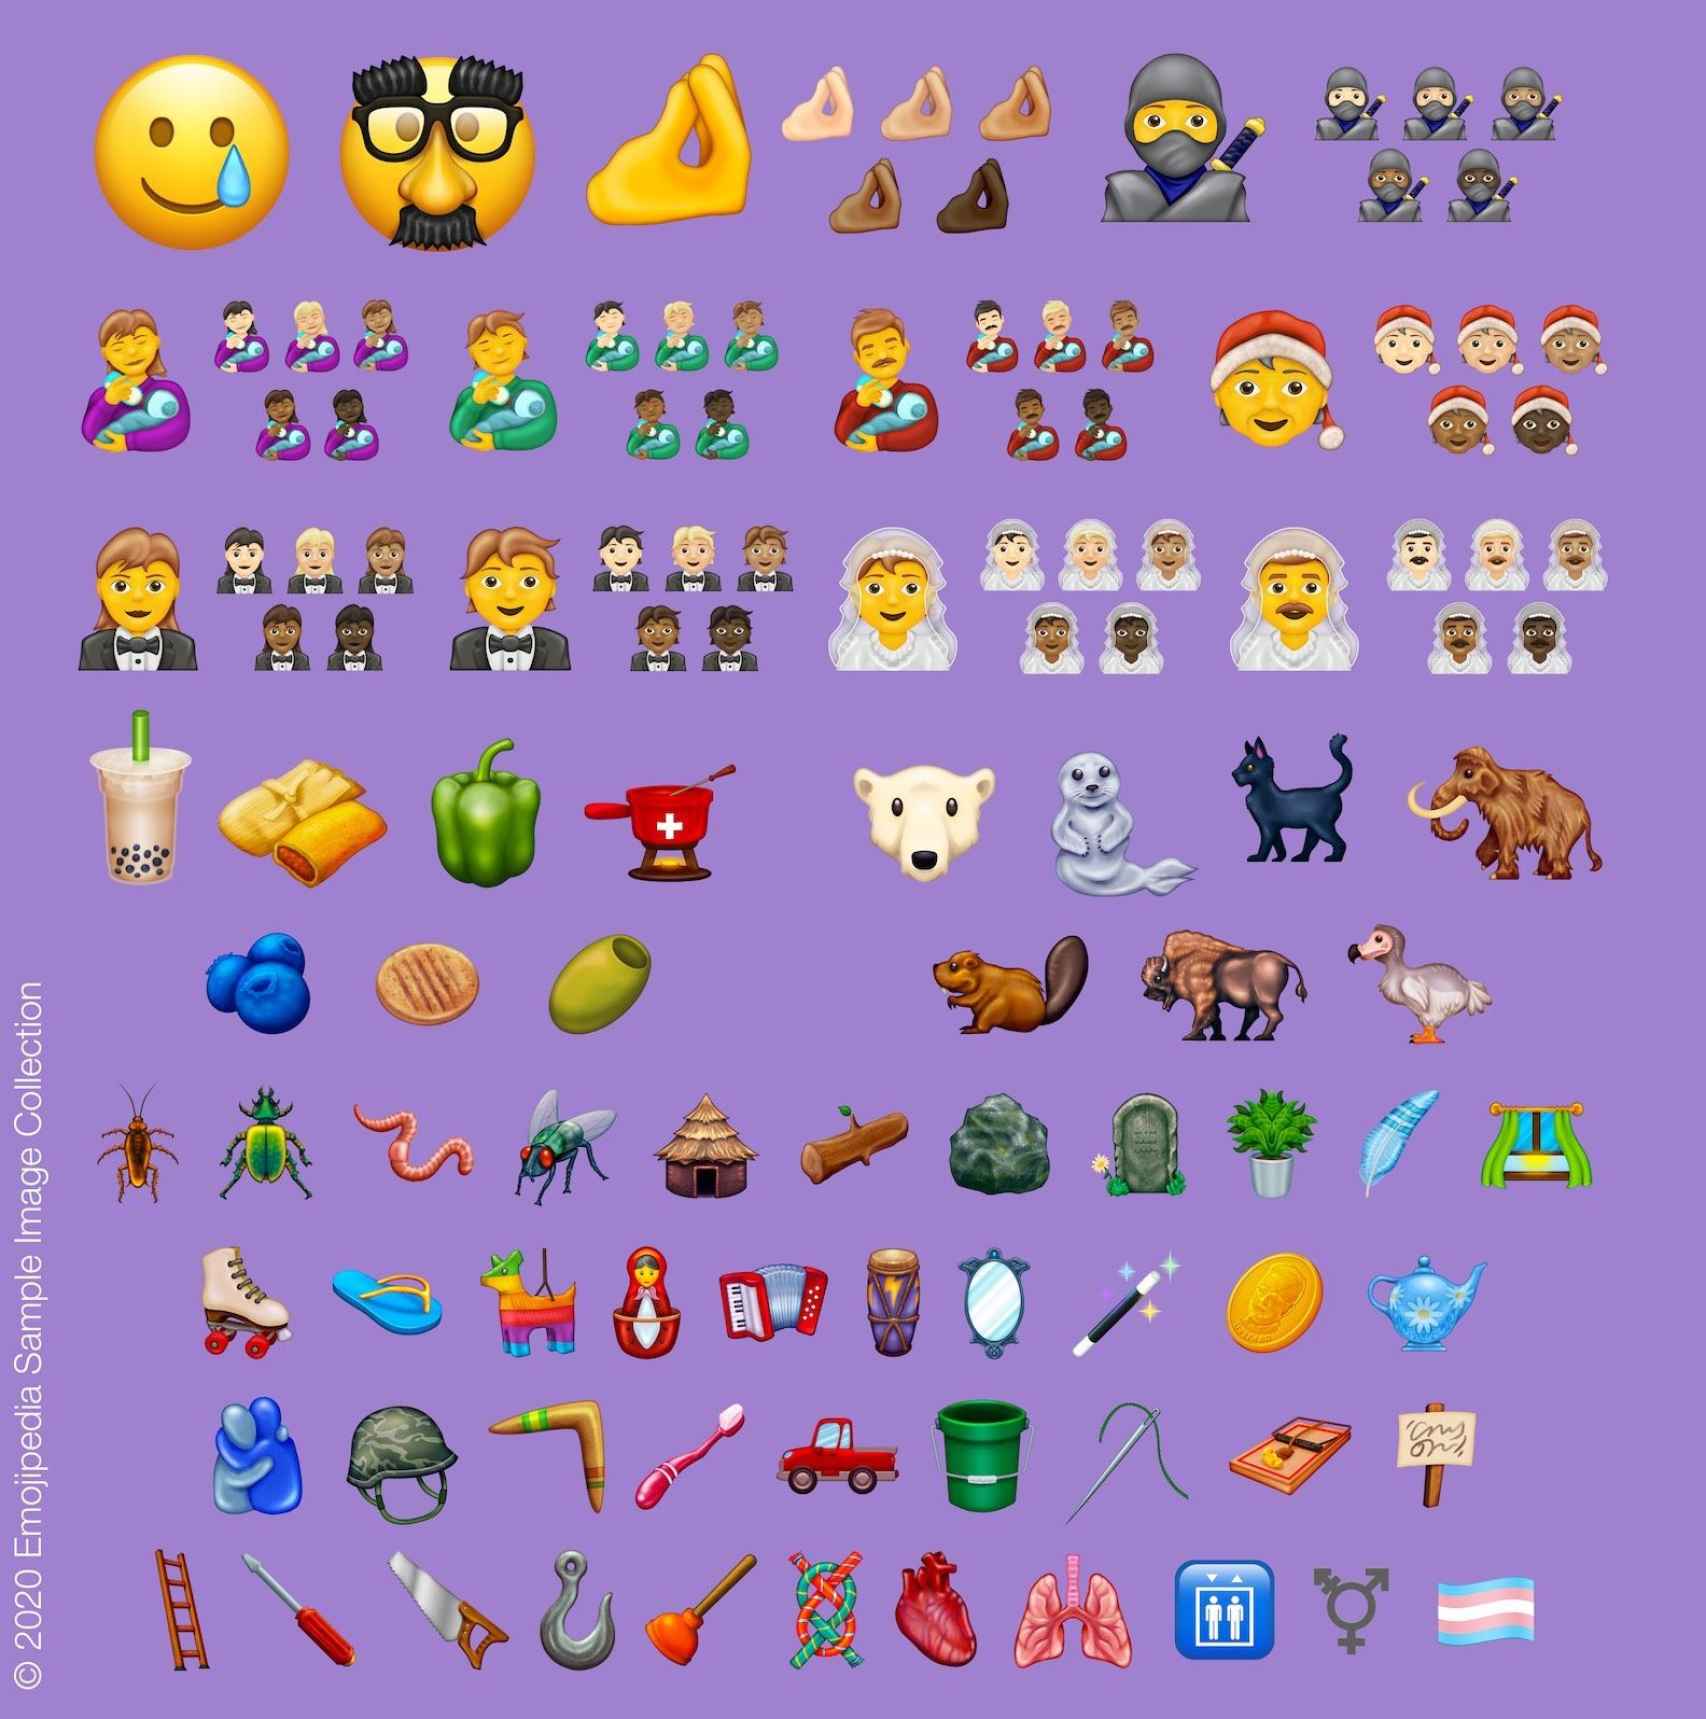 Lista completa de nuevos emoji para el 2020